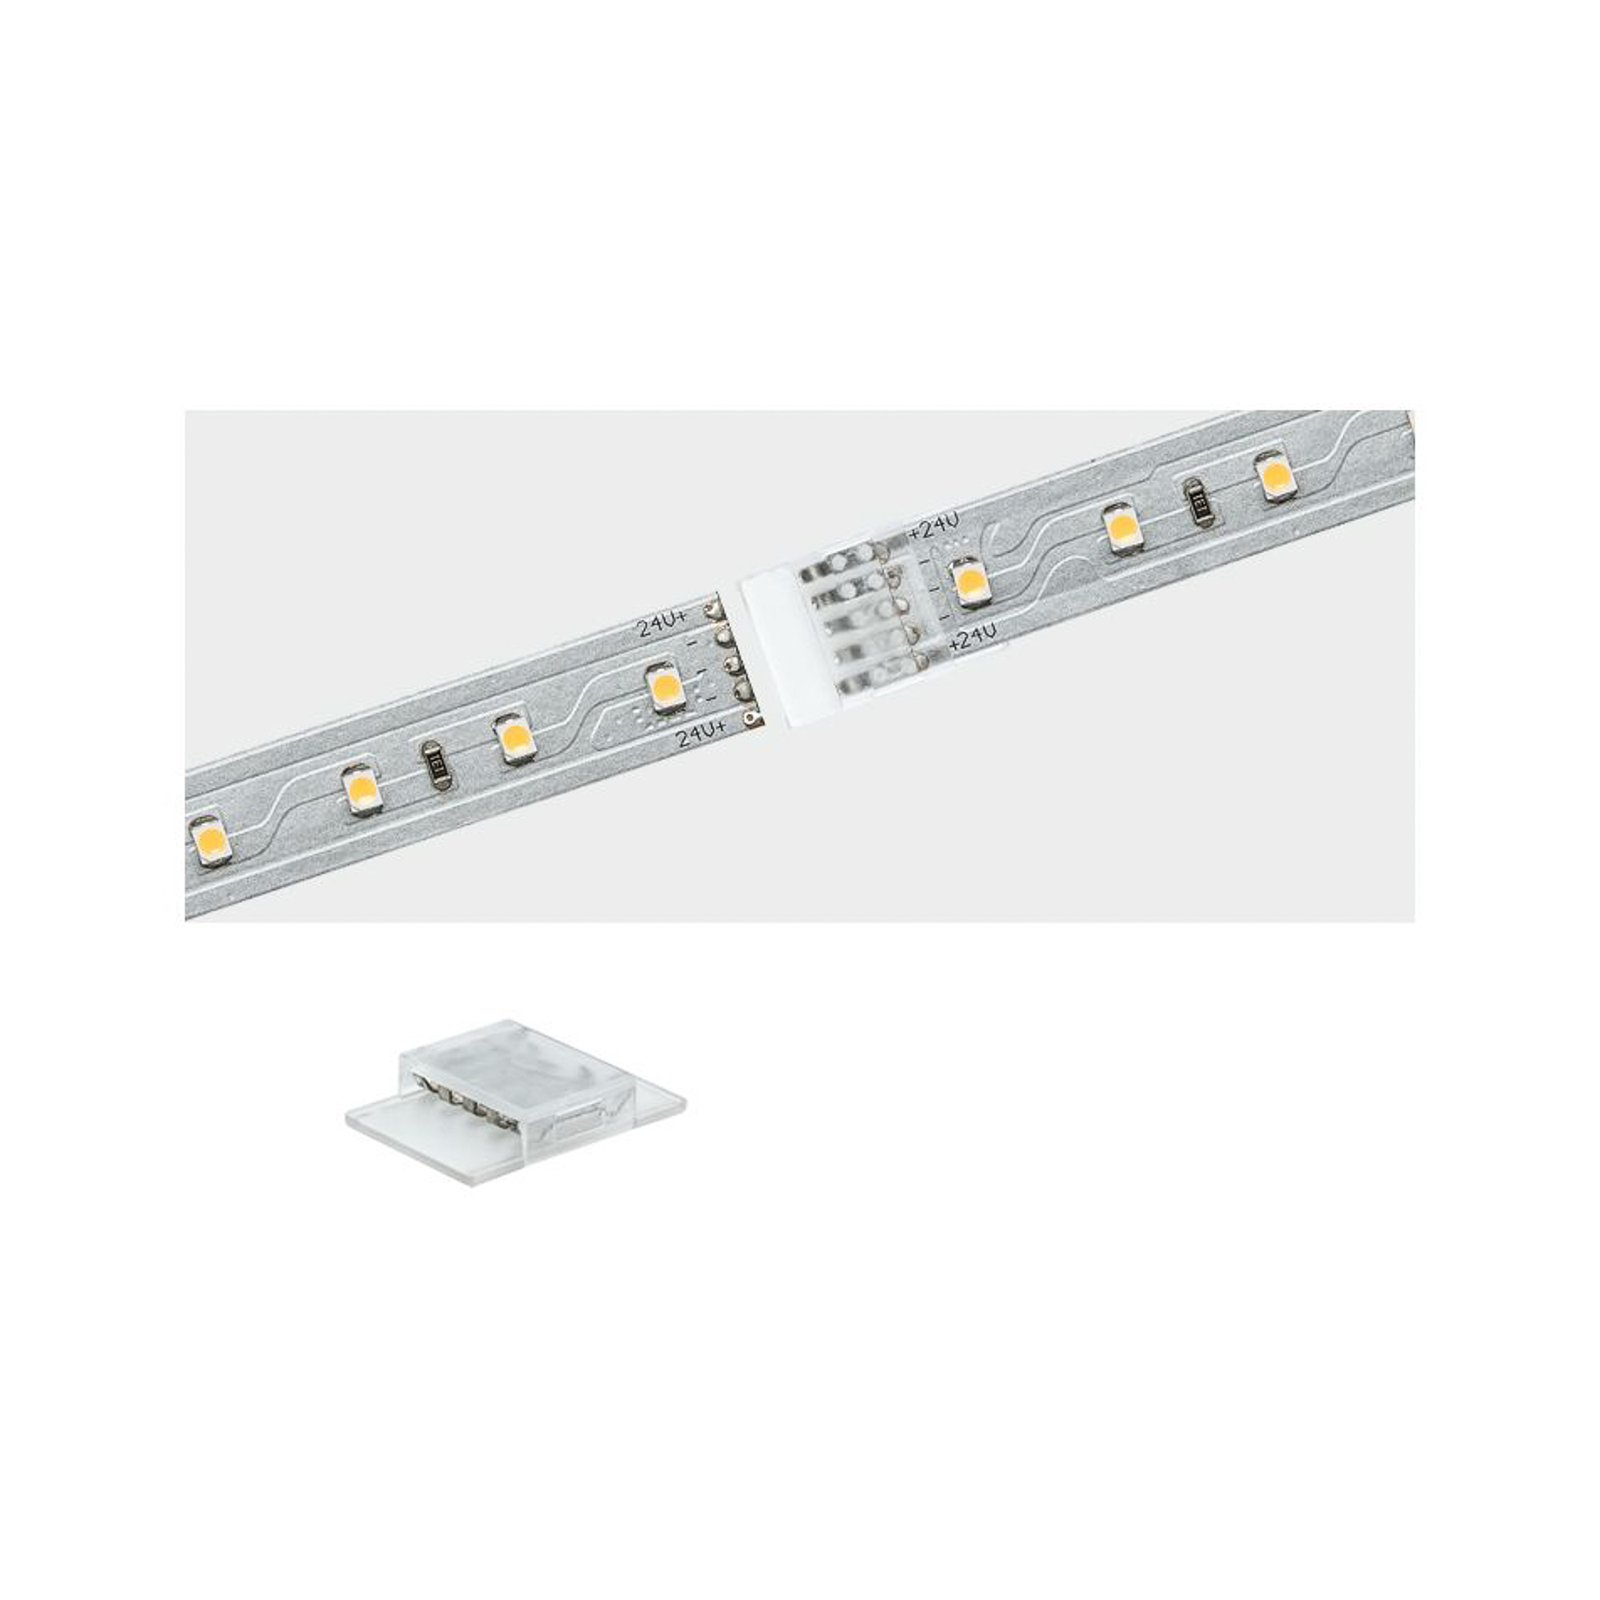 Giunto clip-to-clip per strip LED Max